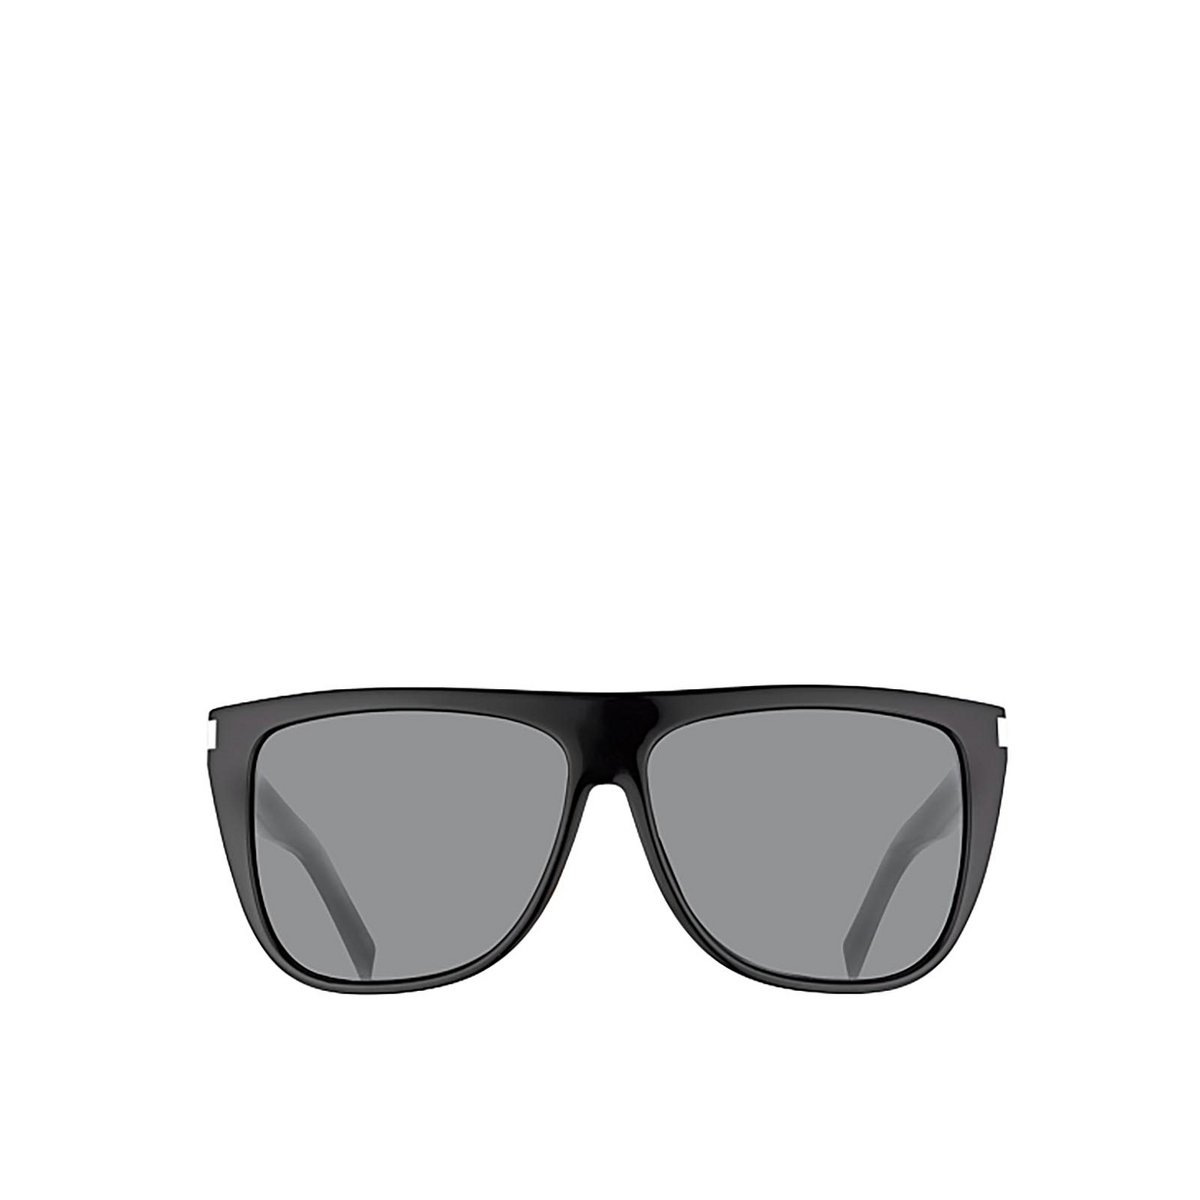 Saint Laurent SL 1 Sunglasses 001 Black - front view